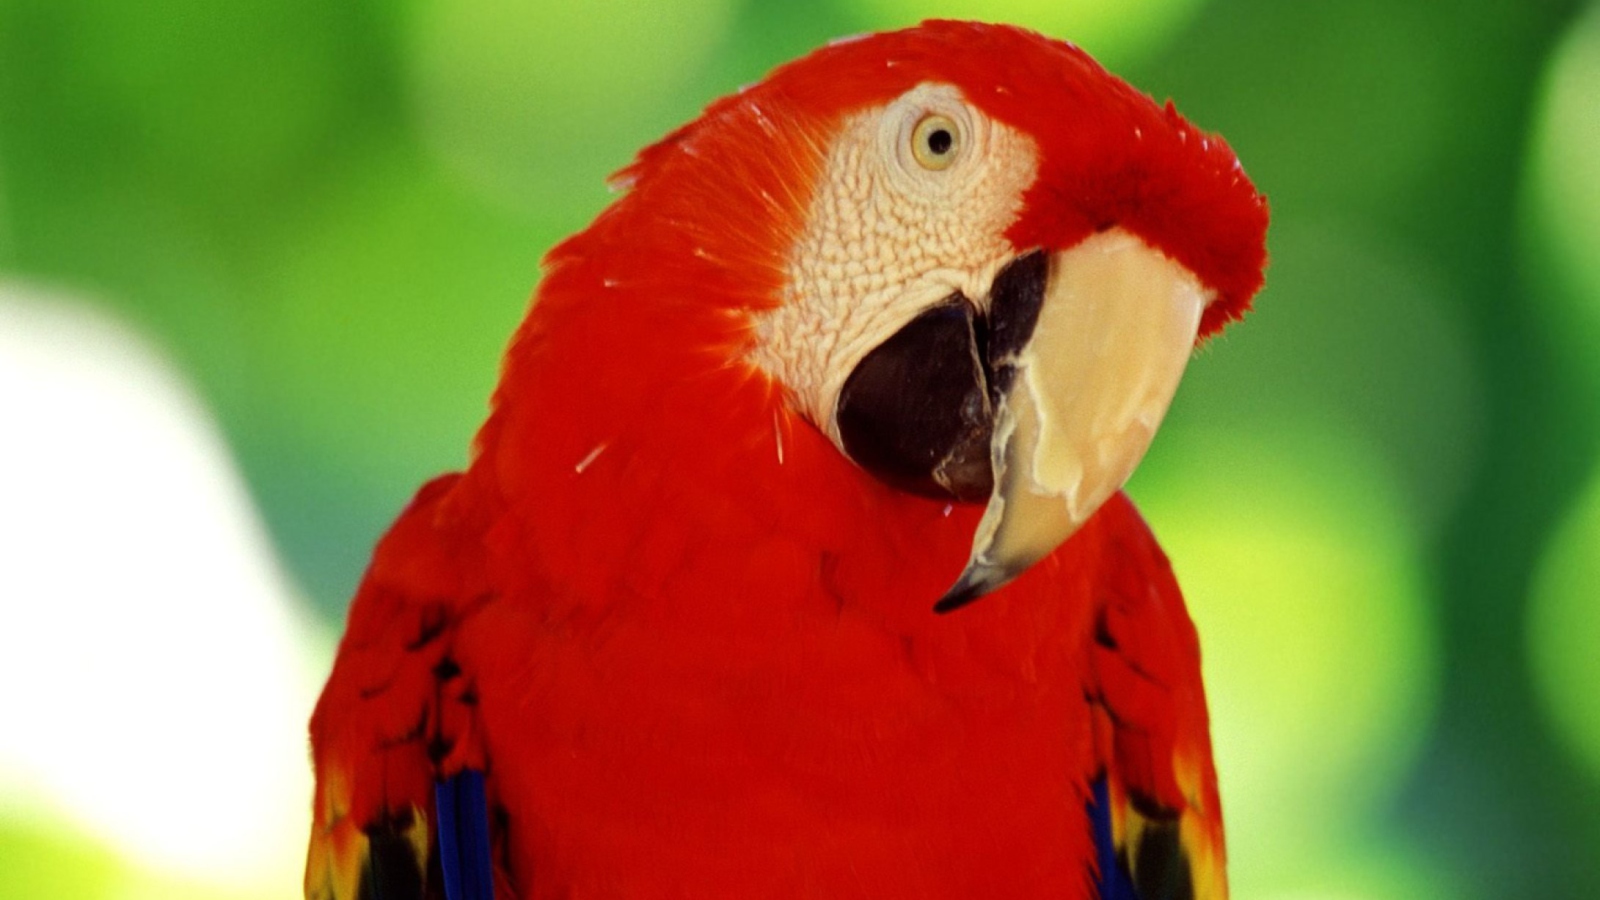 Das Red Parrot Wallpaper 1600x900